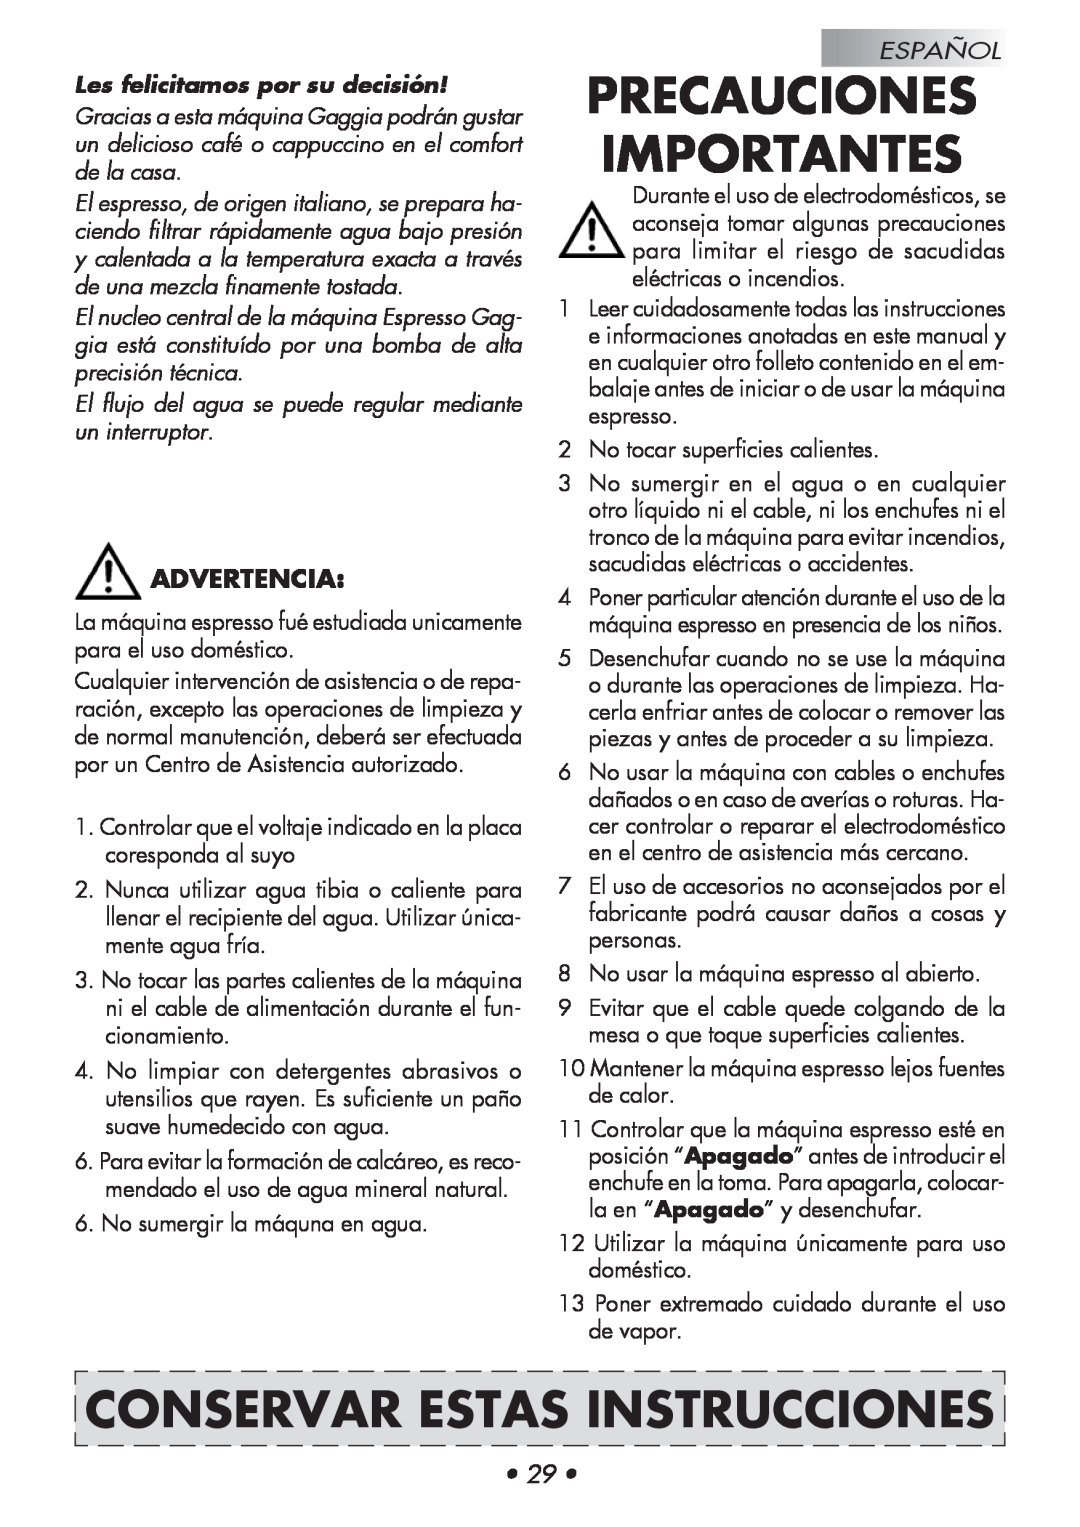 Gaggia 14101-8002 Precauciones Importantes, Conservar Estas Instrucciones, Advertencia, Les felicitamos por su decisión 